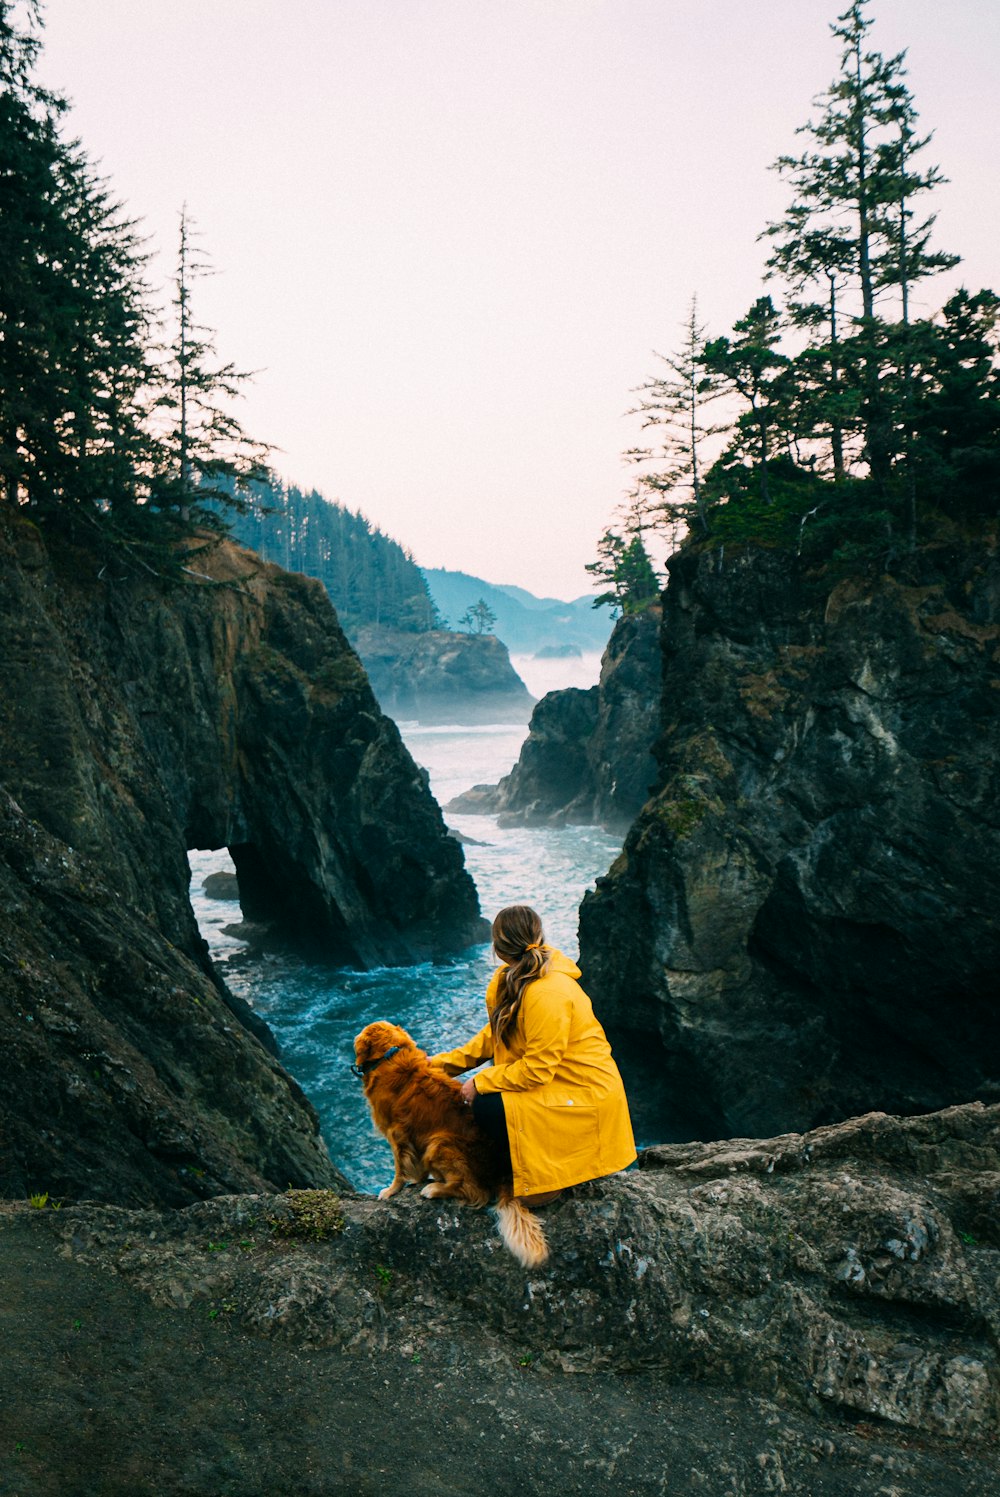 茶色の犬のそばの岩の上に座っている黄色いジャケットの女性